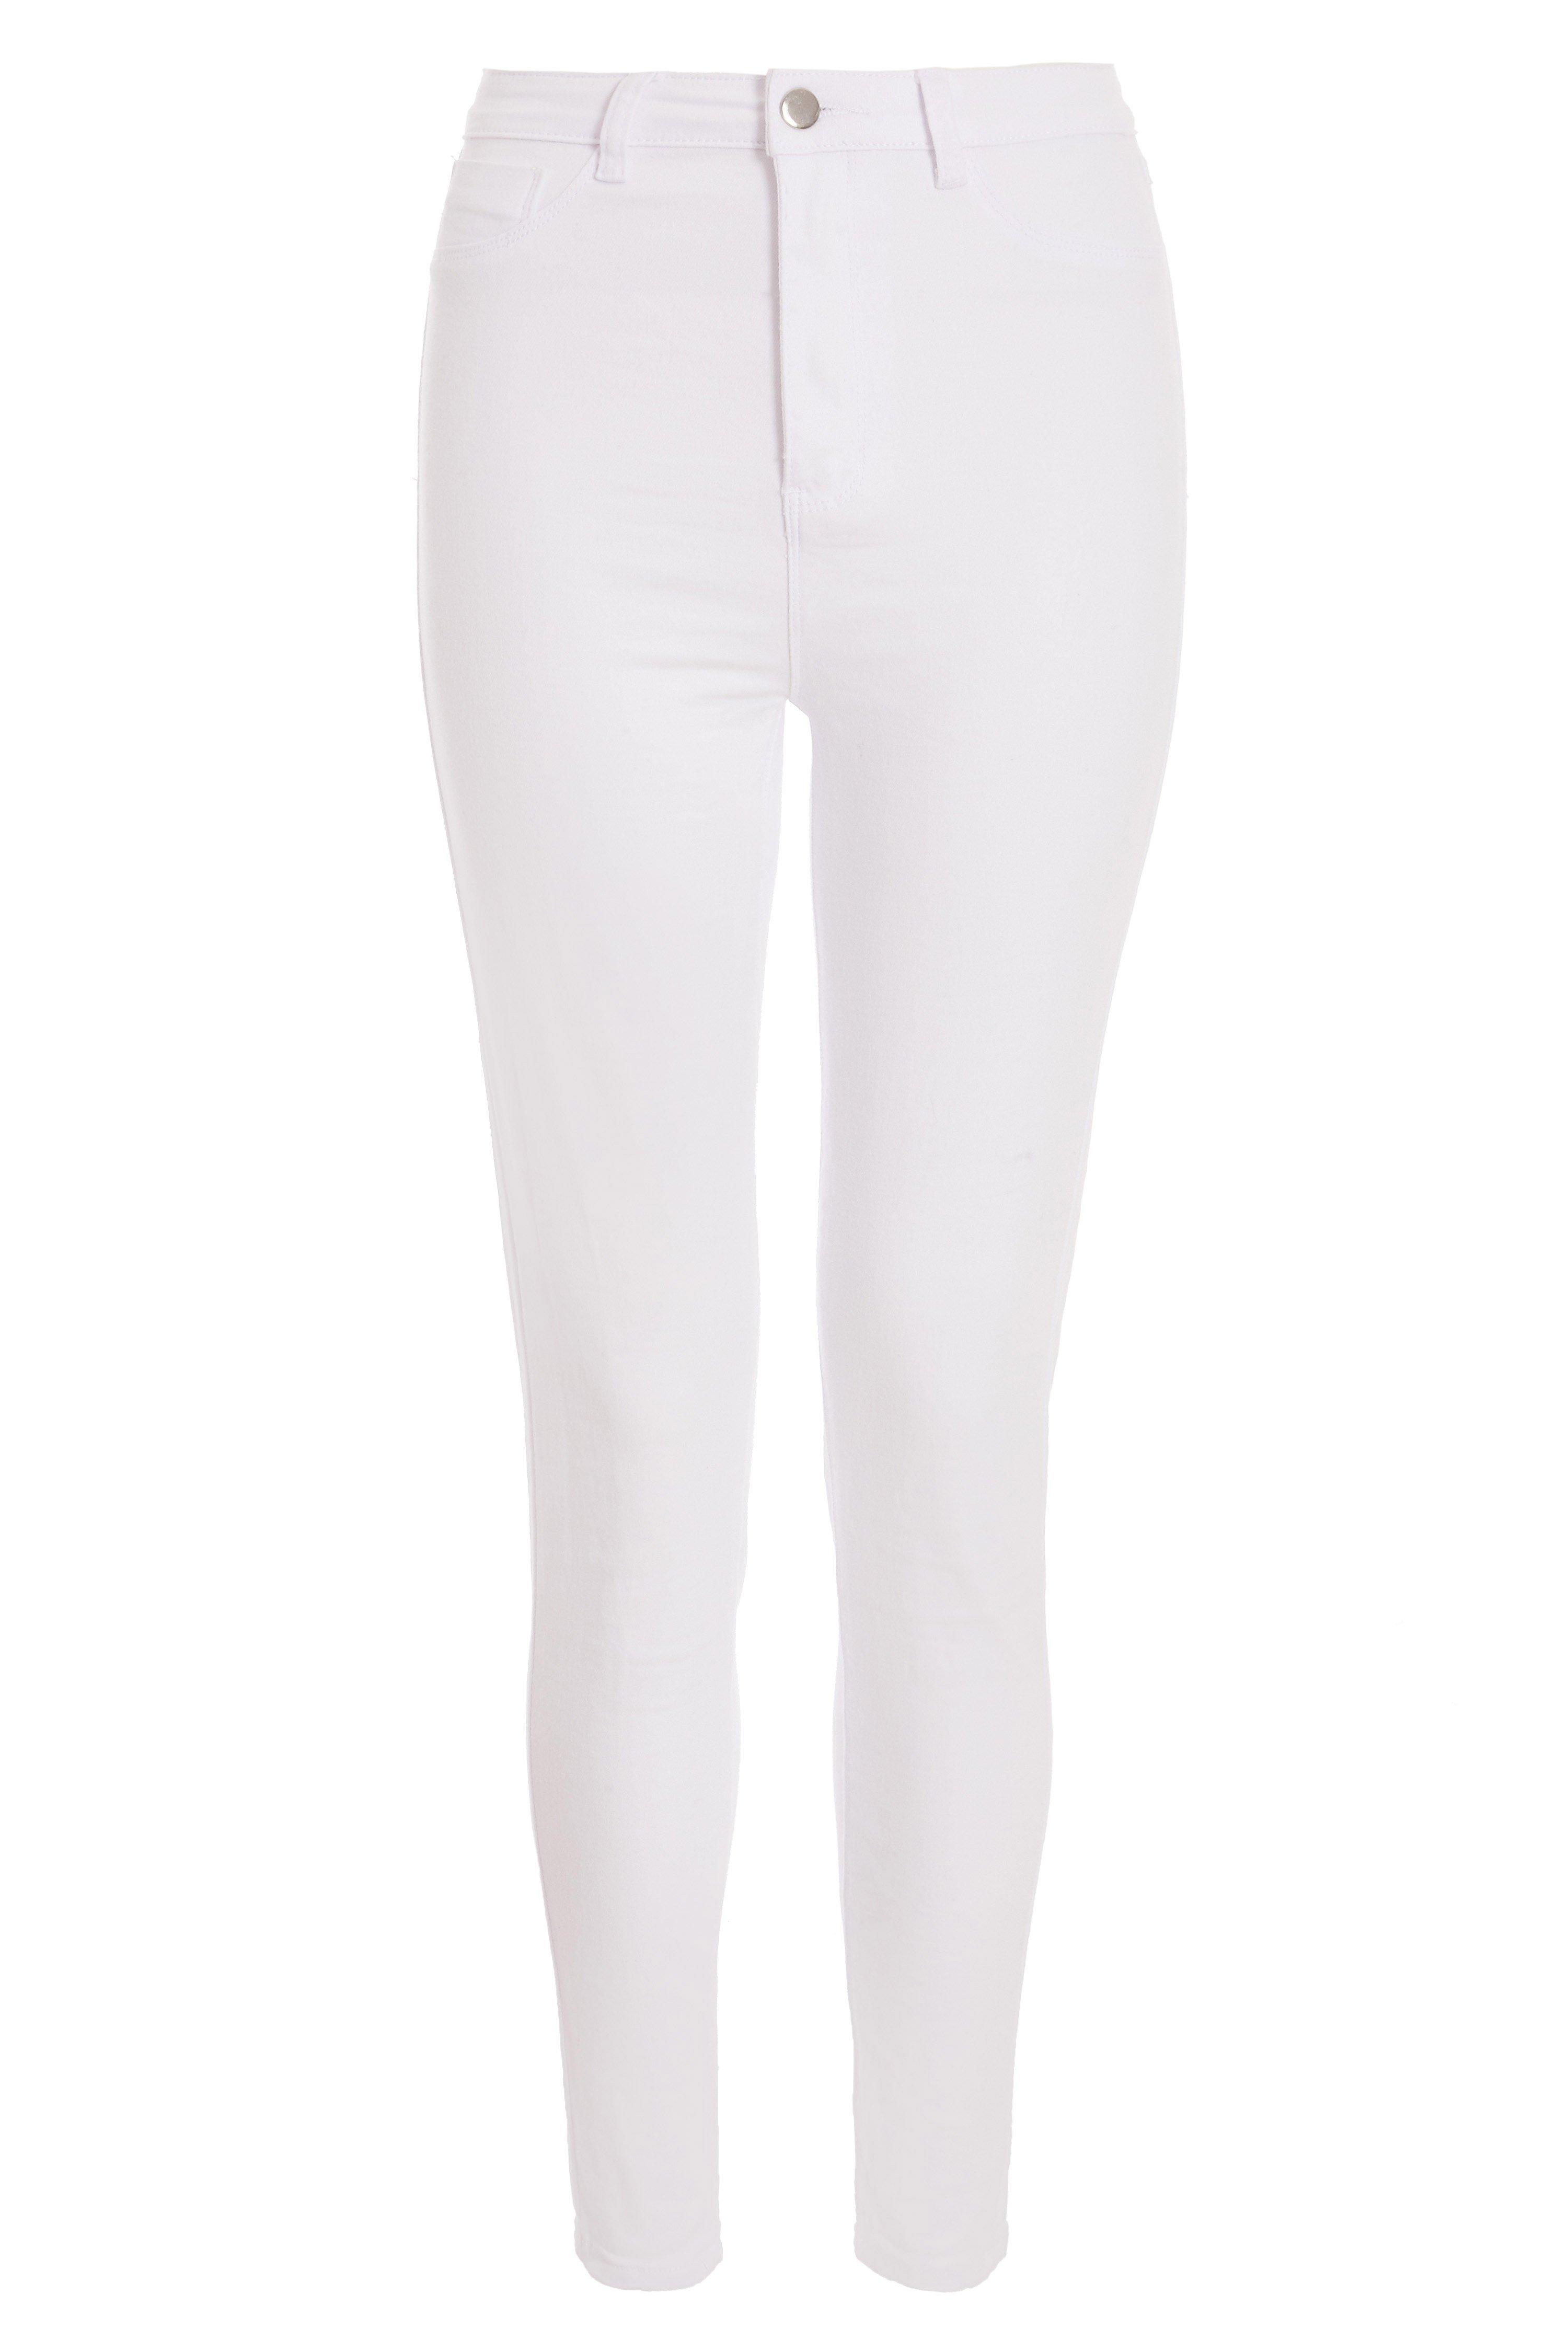 White Stretch Denim Skinny Jeans - Quiz Clothing